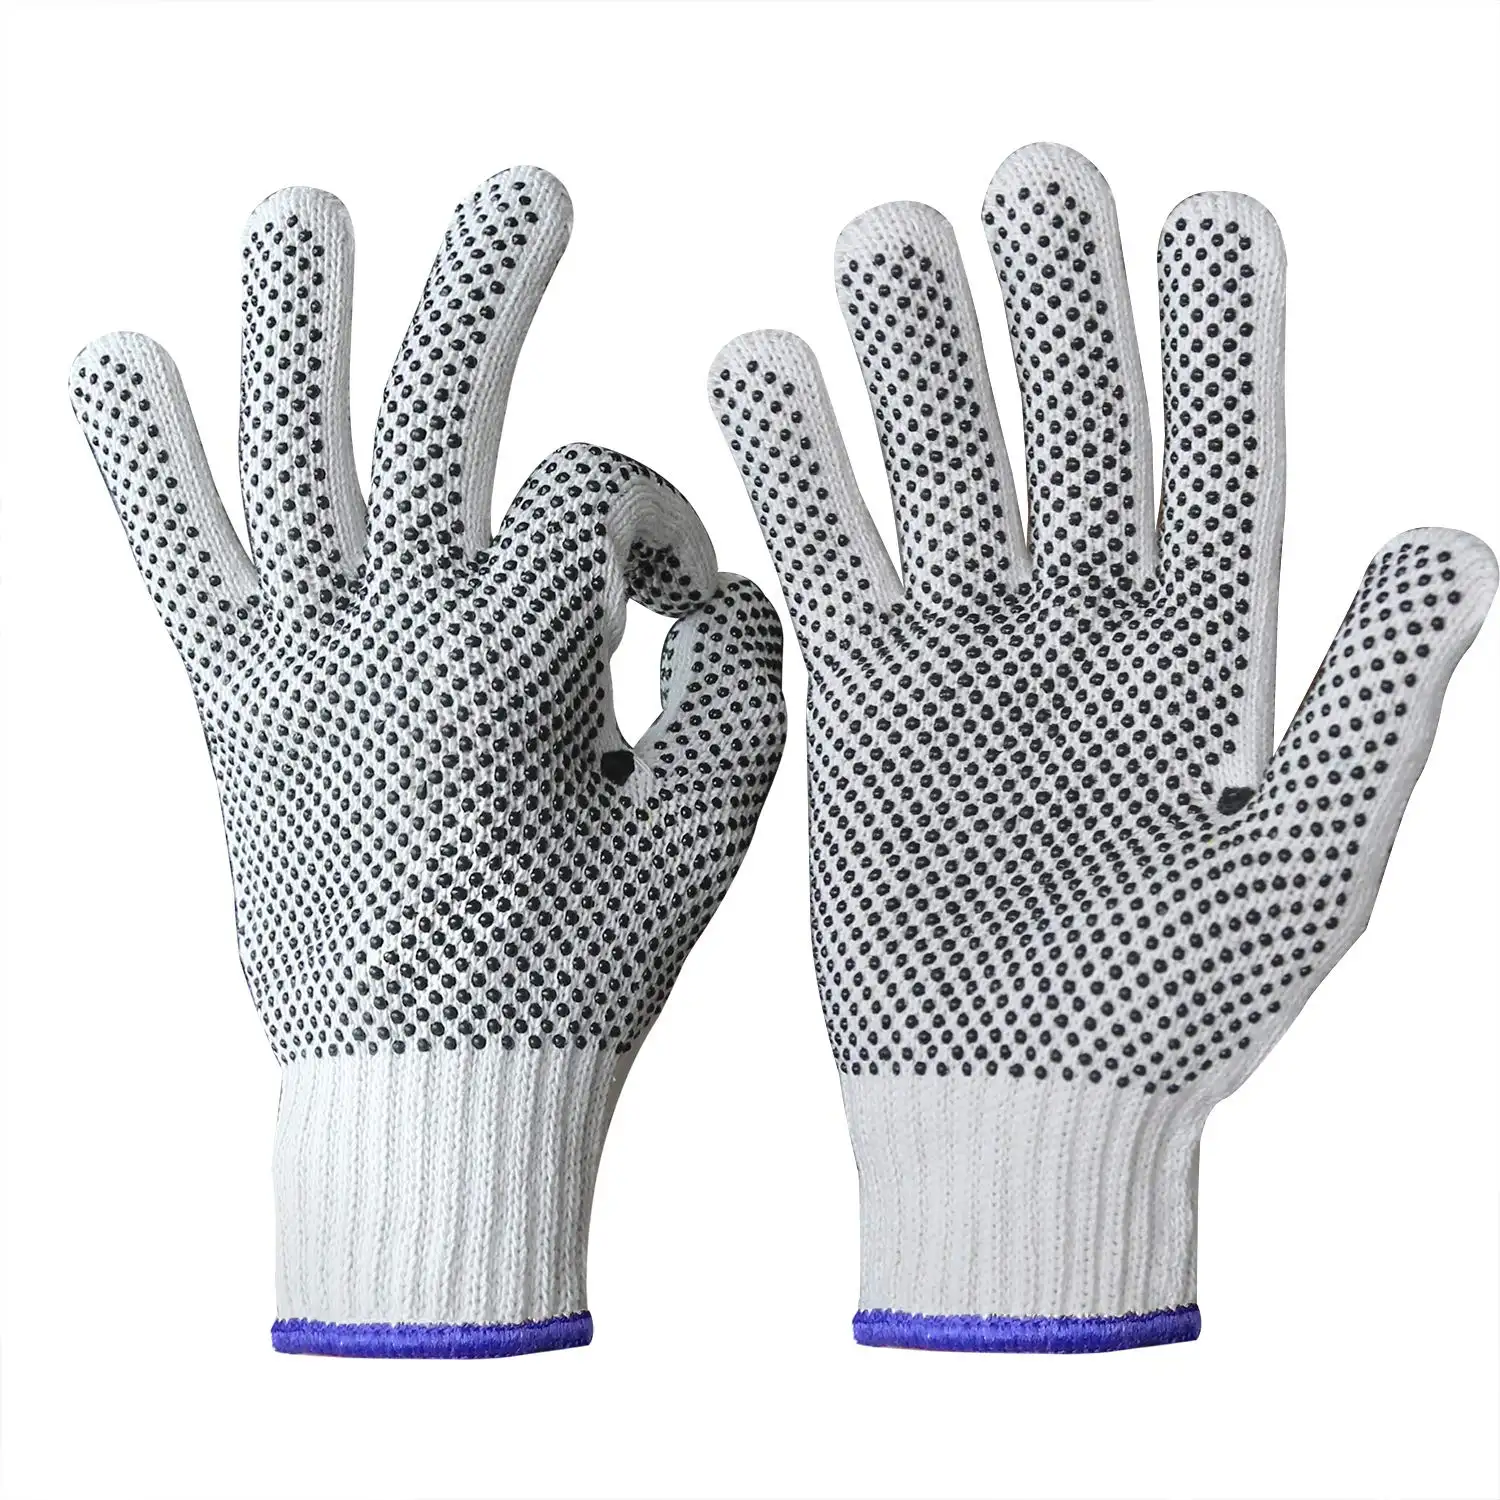 Venta caliente PVC puntos de trabajo de algodón protección de las manos equipos de seguridad personal de albañilería guantes de seguridad de trabajo